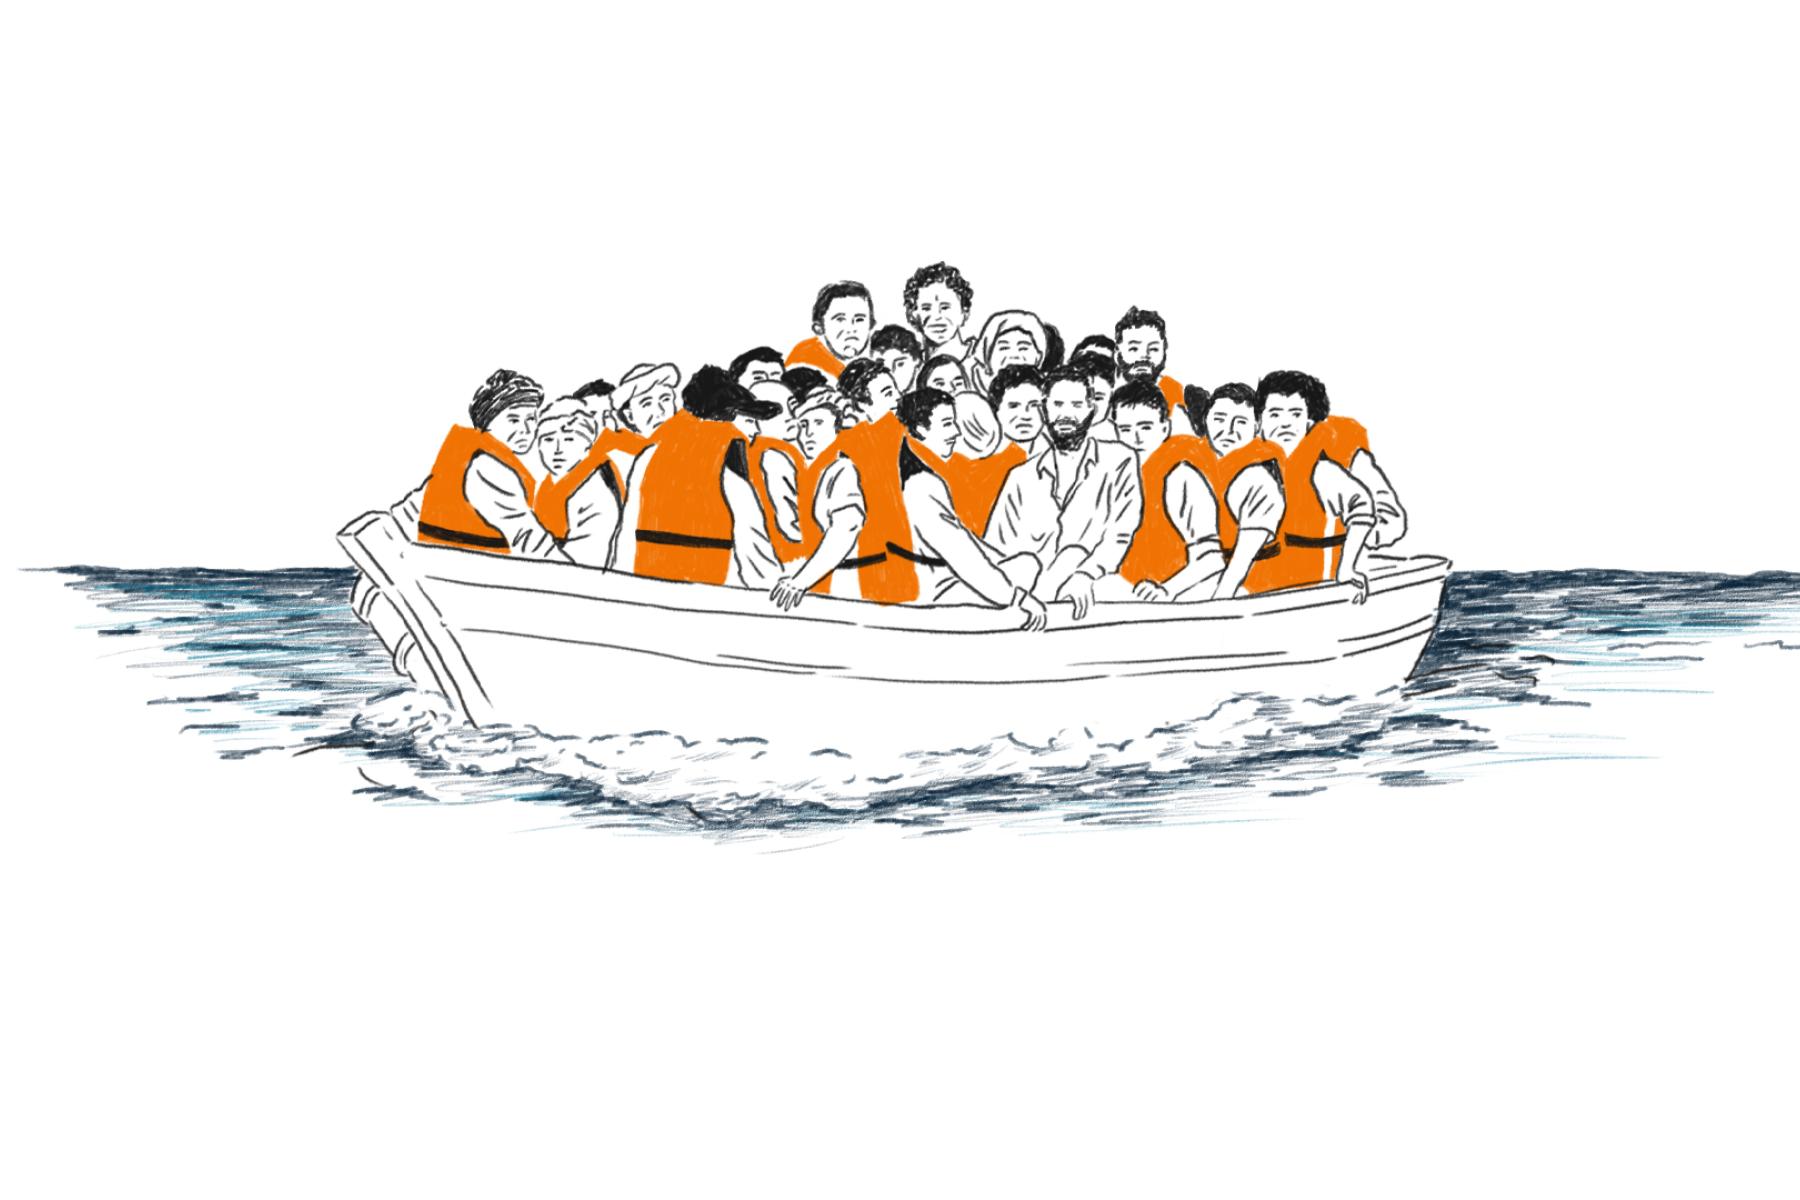 Båd over migranter_illustration_Cecilie Castor